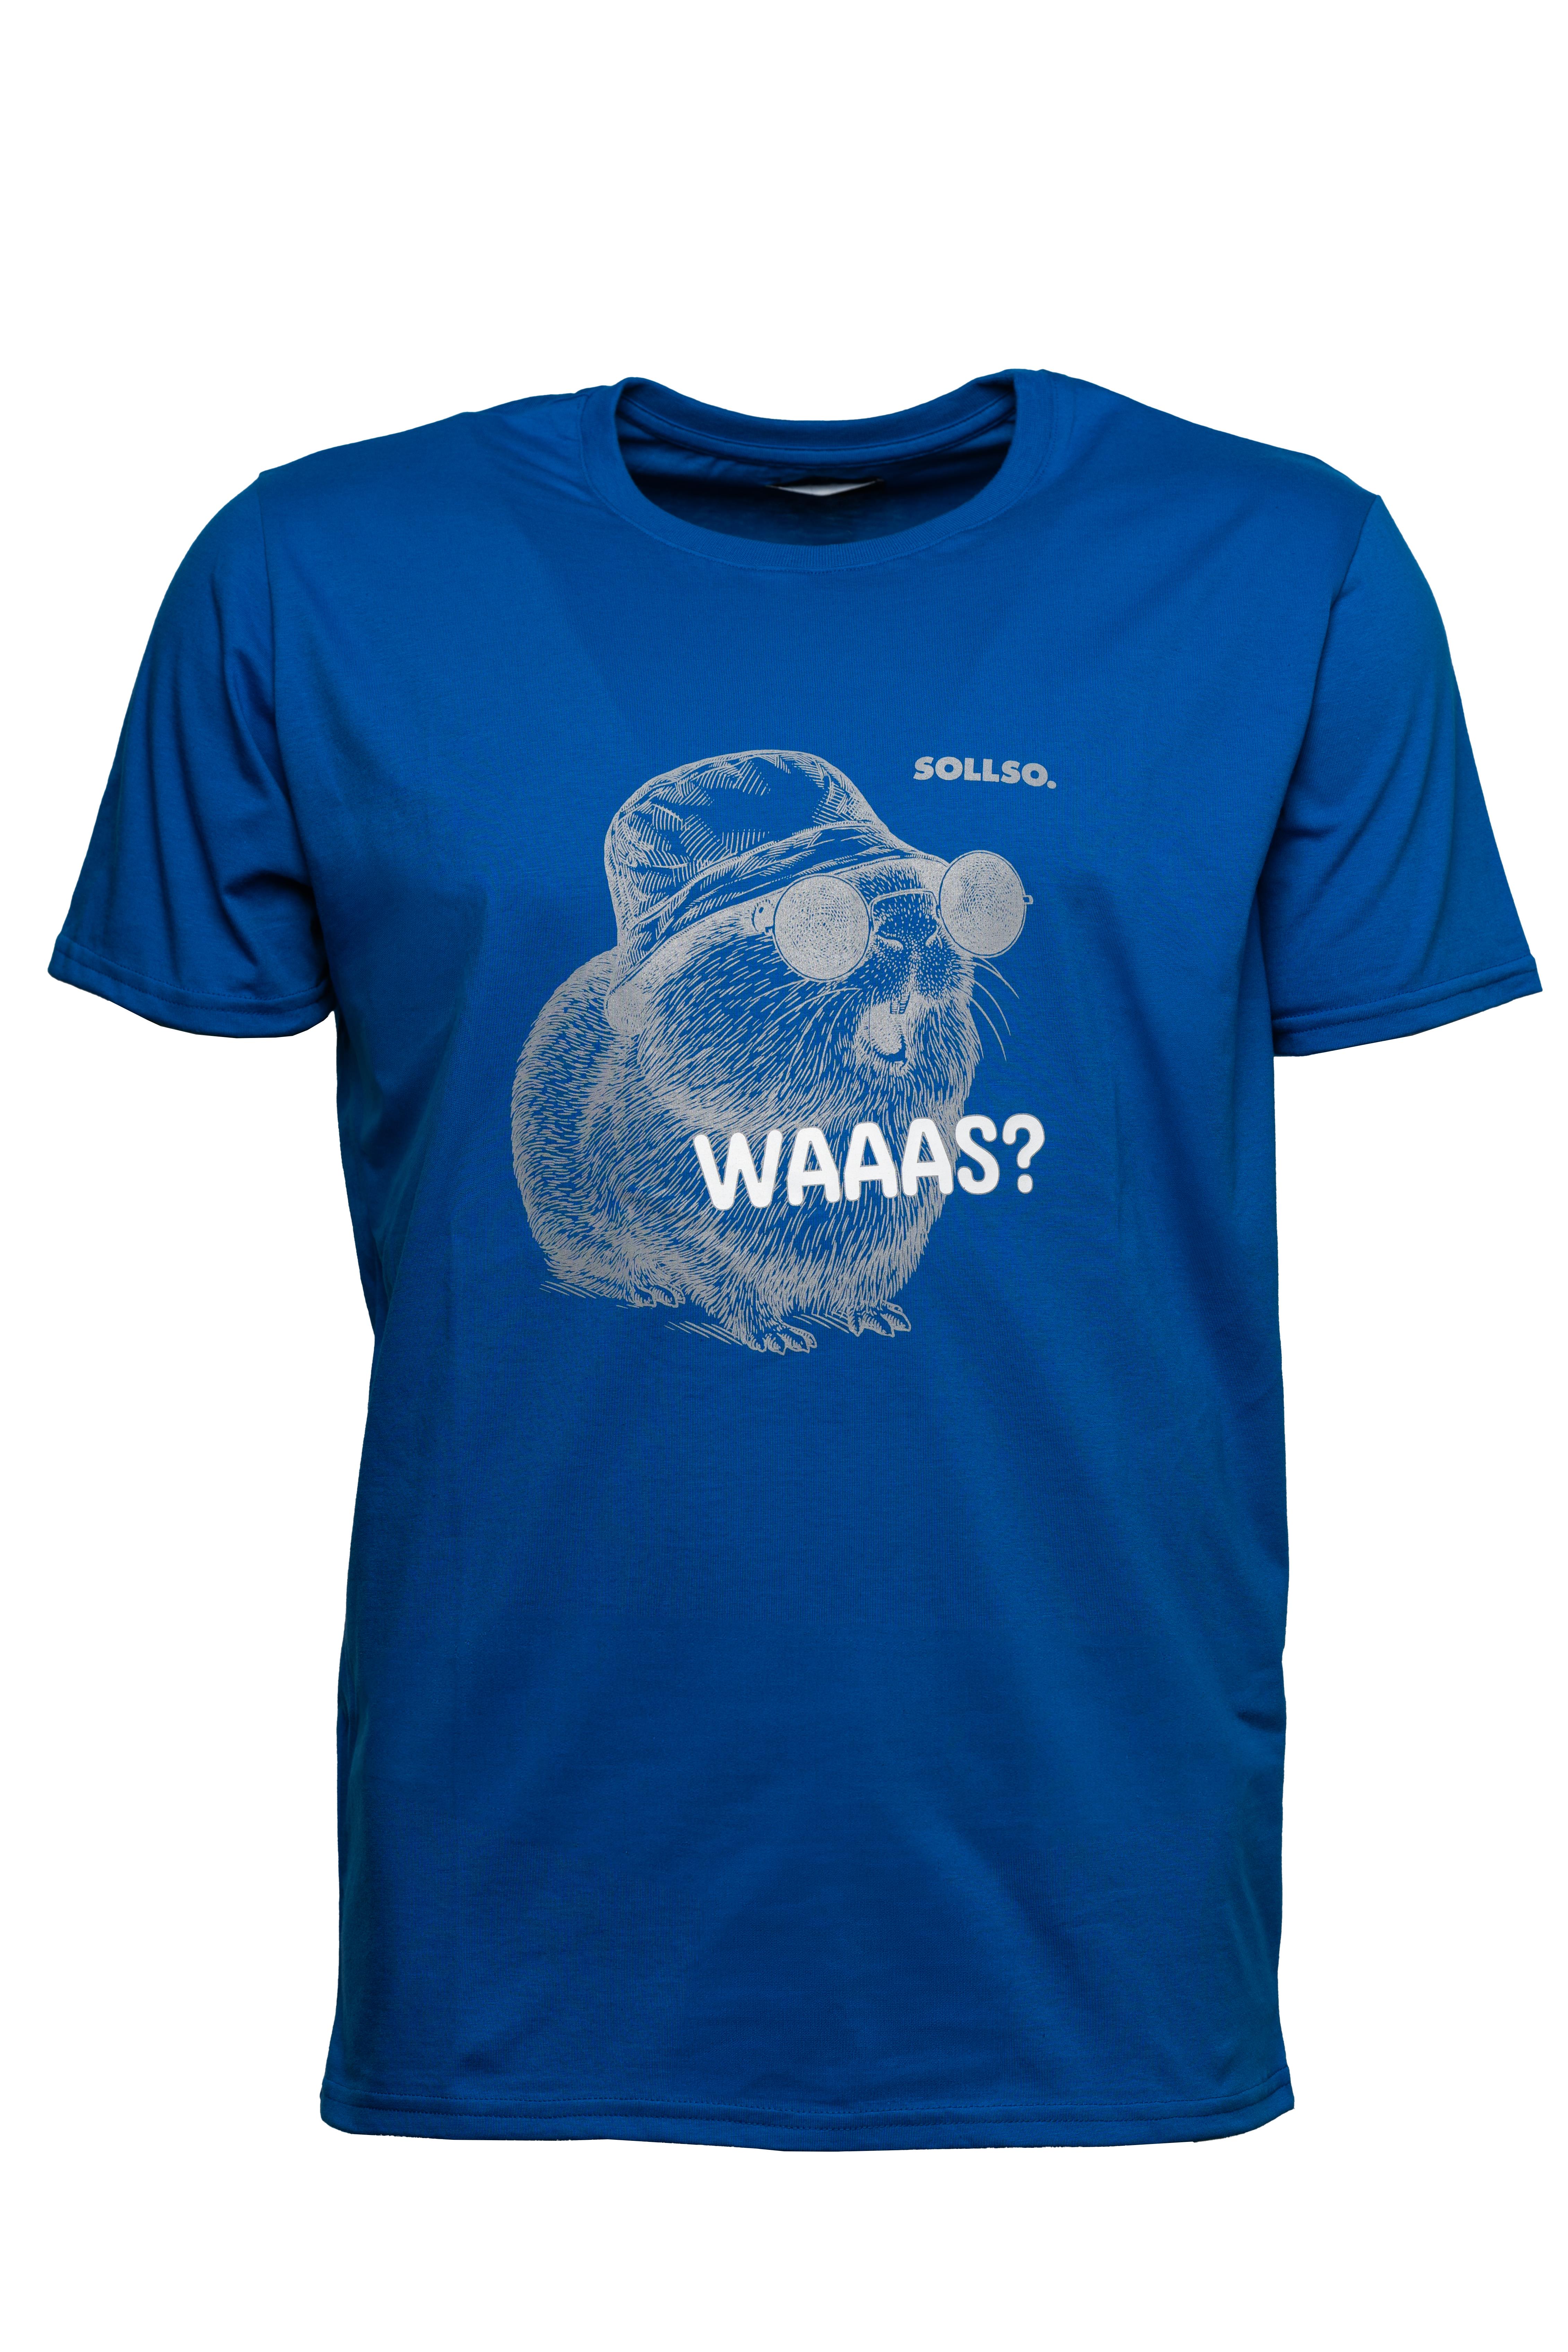 SOLLSO. T-Shirt "Guinea Pig" Farbe Ocean Blue, Größe 8XL